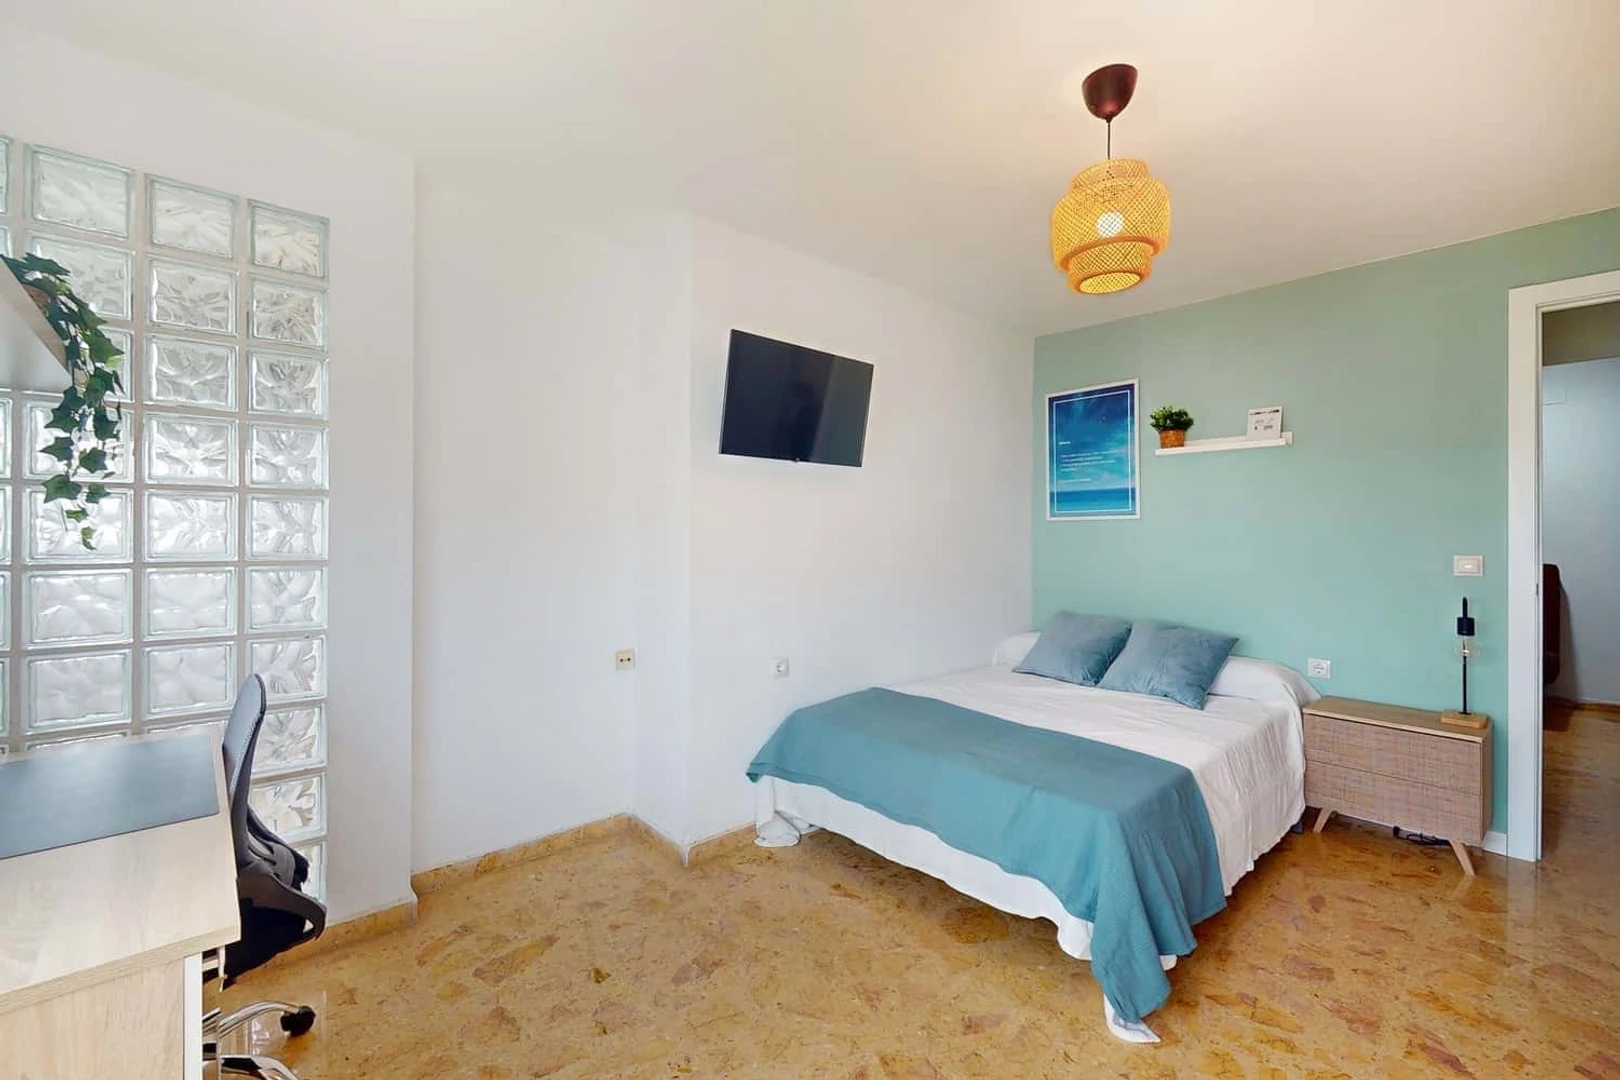 Bright private room in valencia